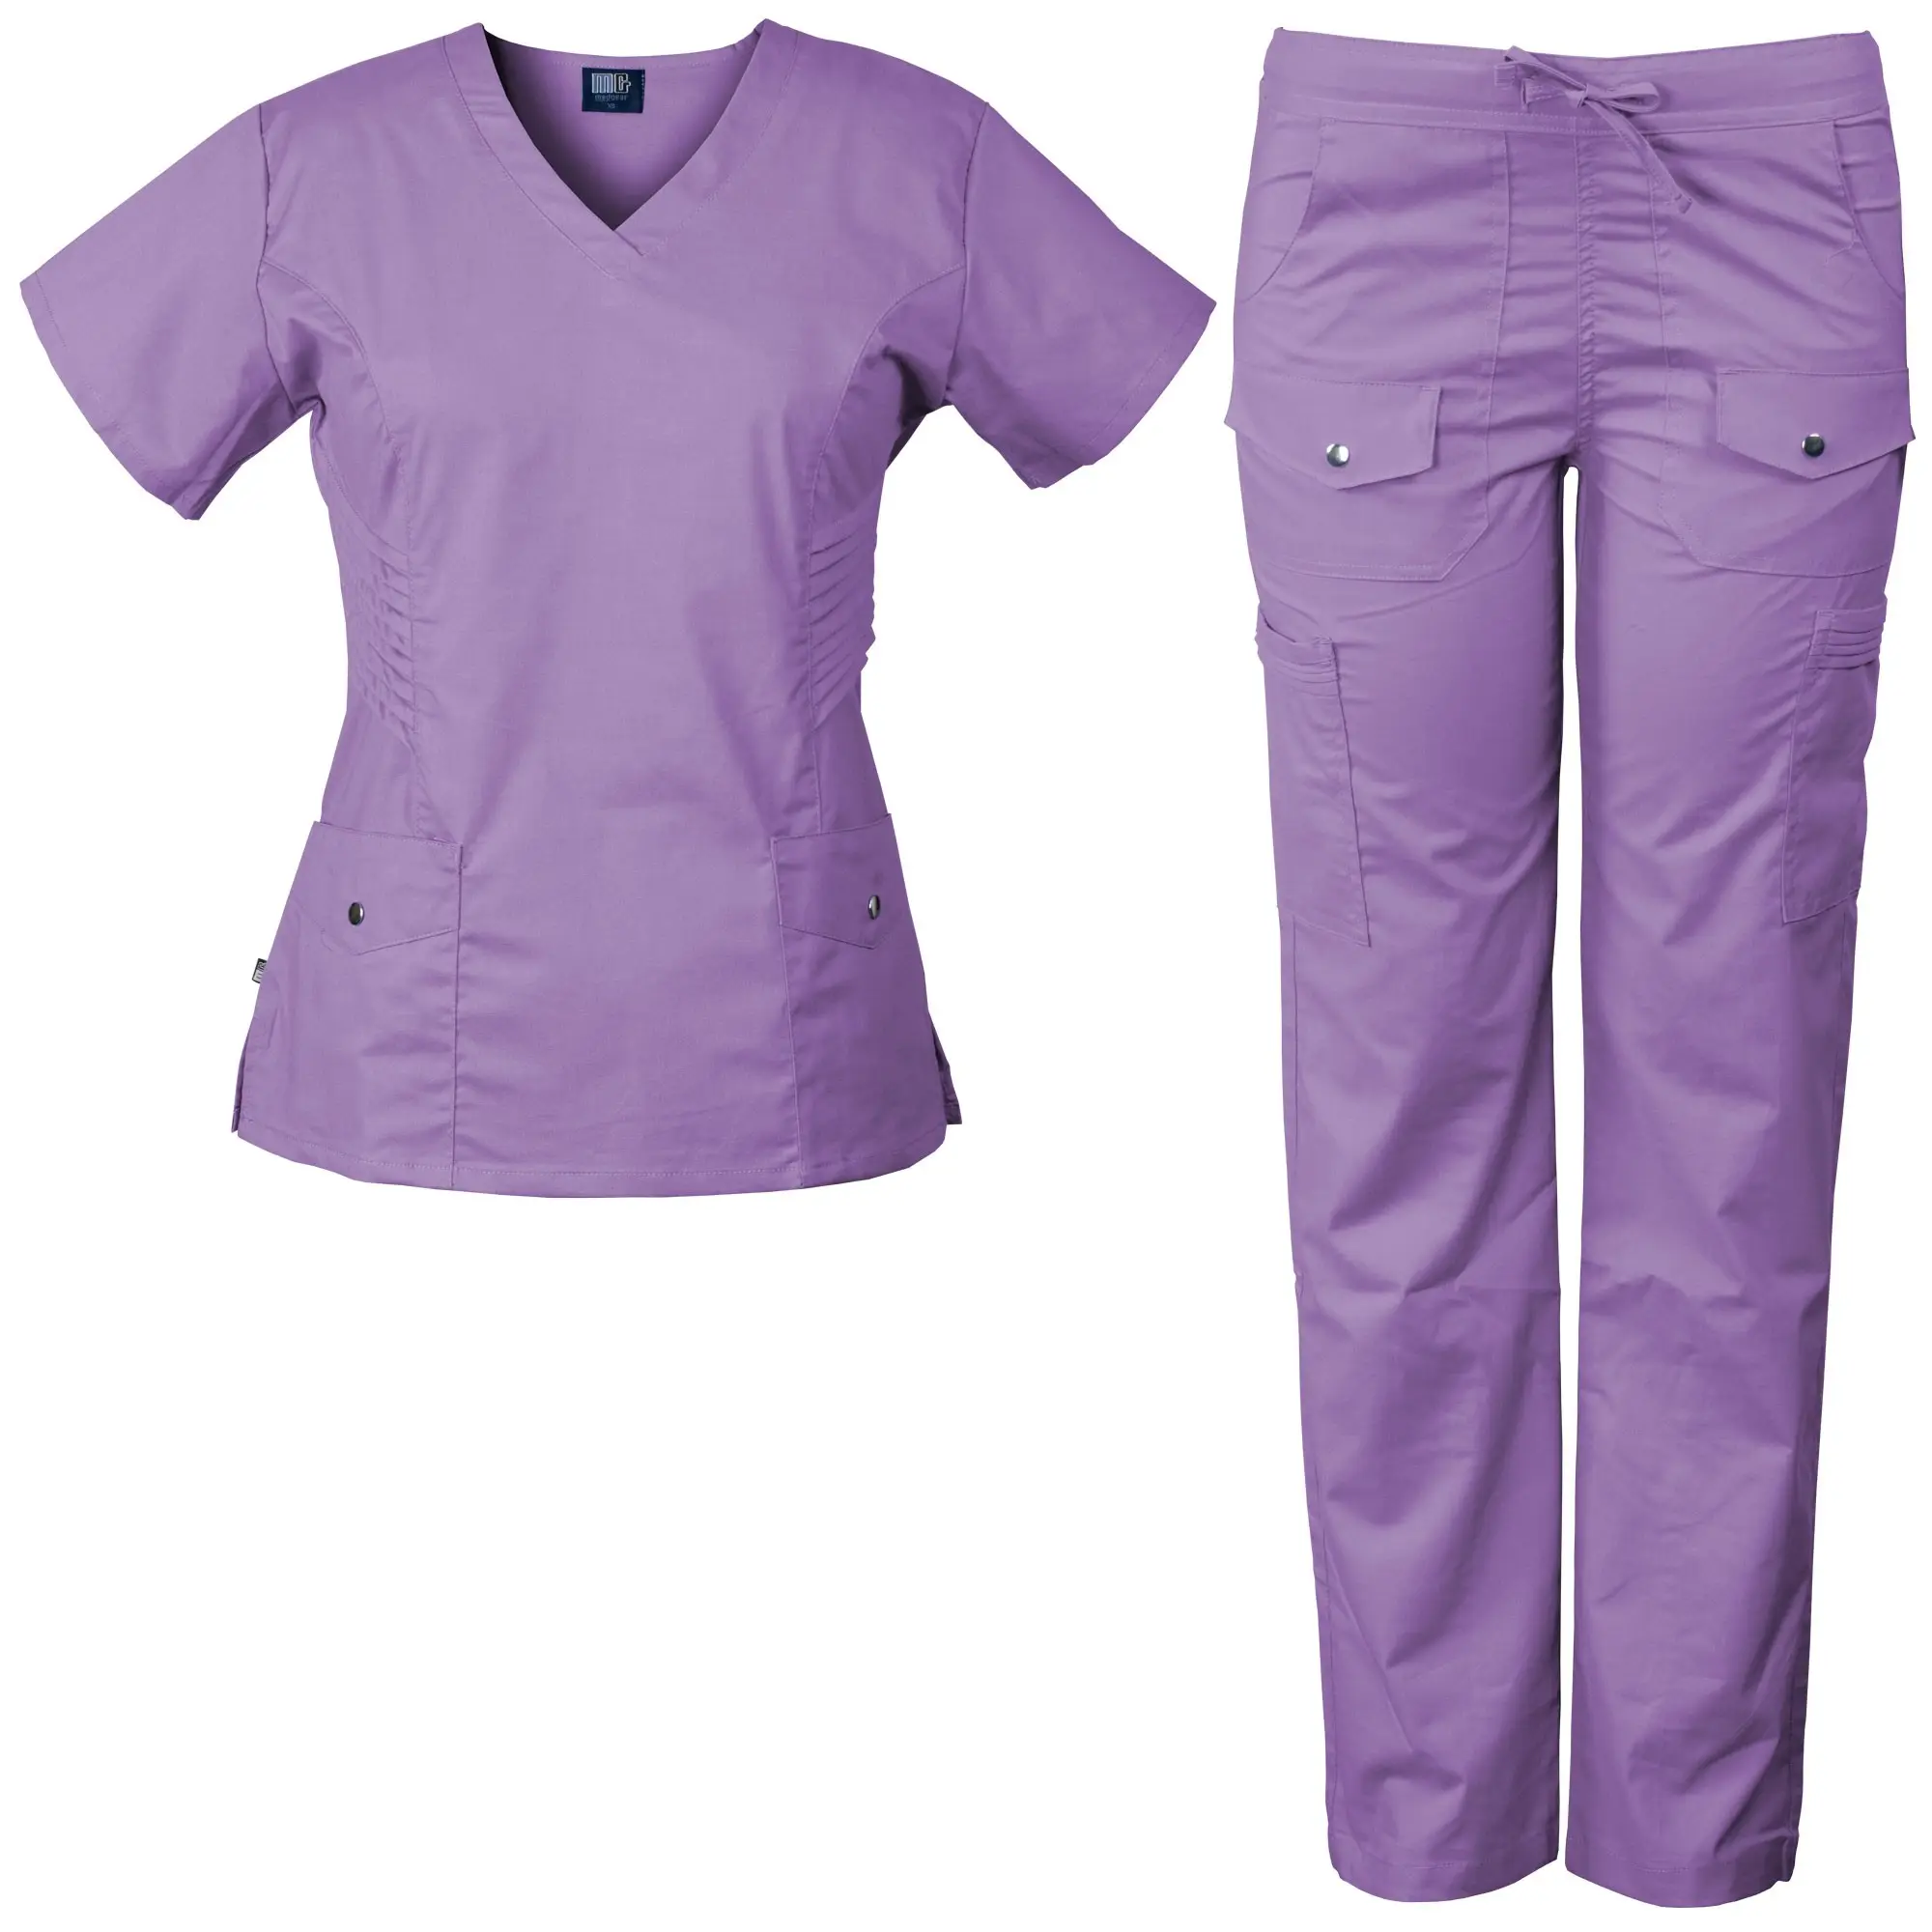 Medico Coats-uniformi chirurgiche mediche dell'ospedale, infermiere alla moda vestono le uniformi dell'ospedale dell'uniforme 2013 per le signore Scrubs